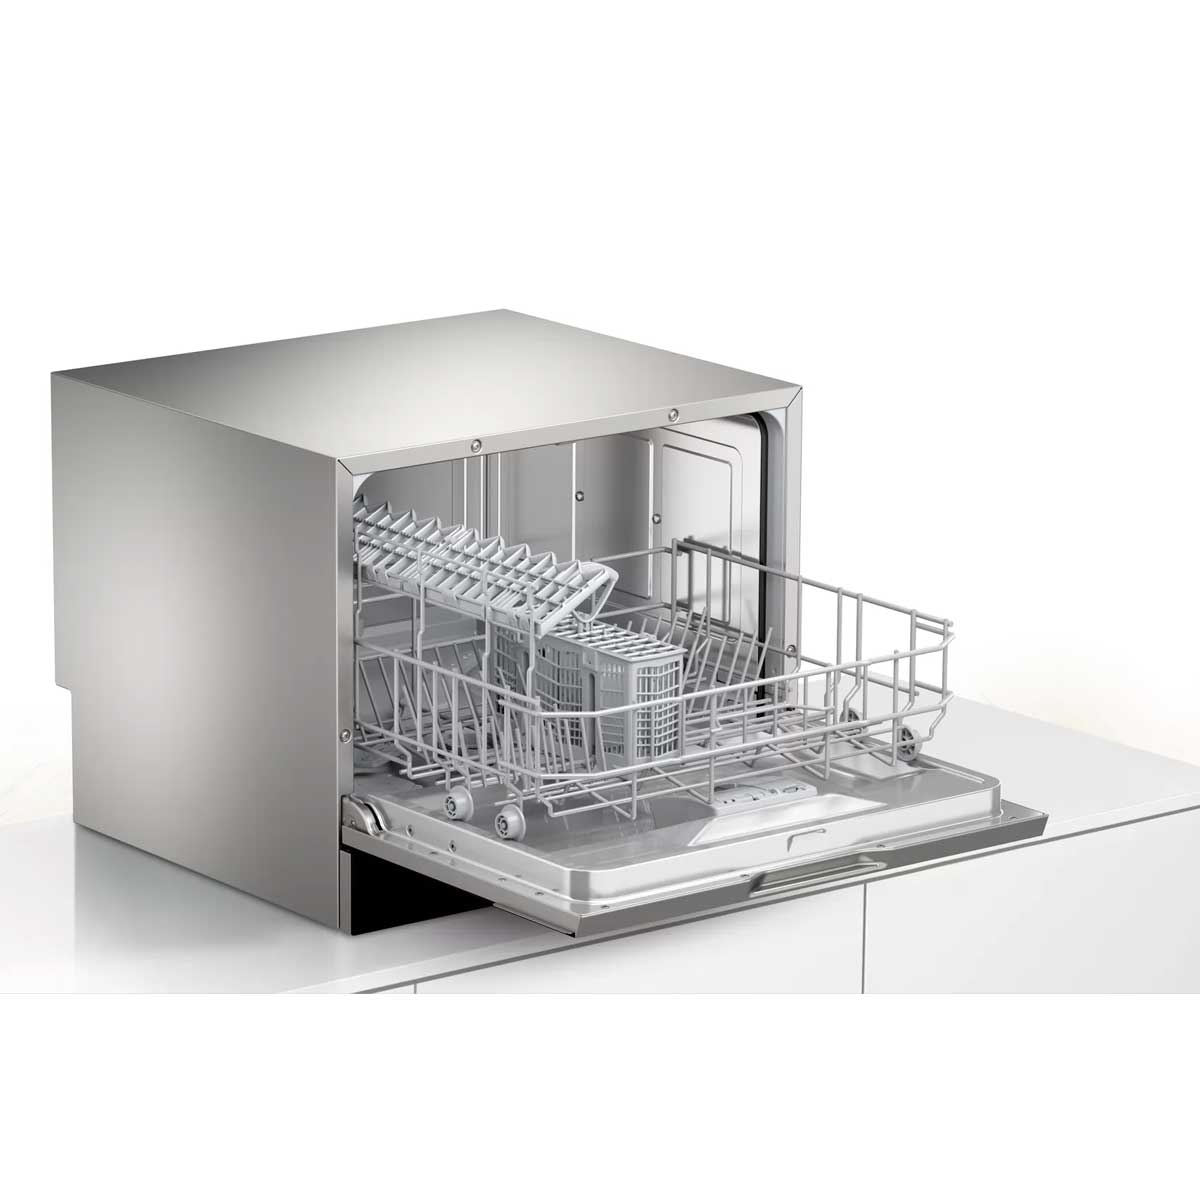 Bosch 博世 SKS68BB008 6套標準餐具 55厘米 座檯式洗碗碟機 - ShineCreation 創暉百貨